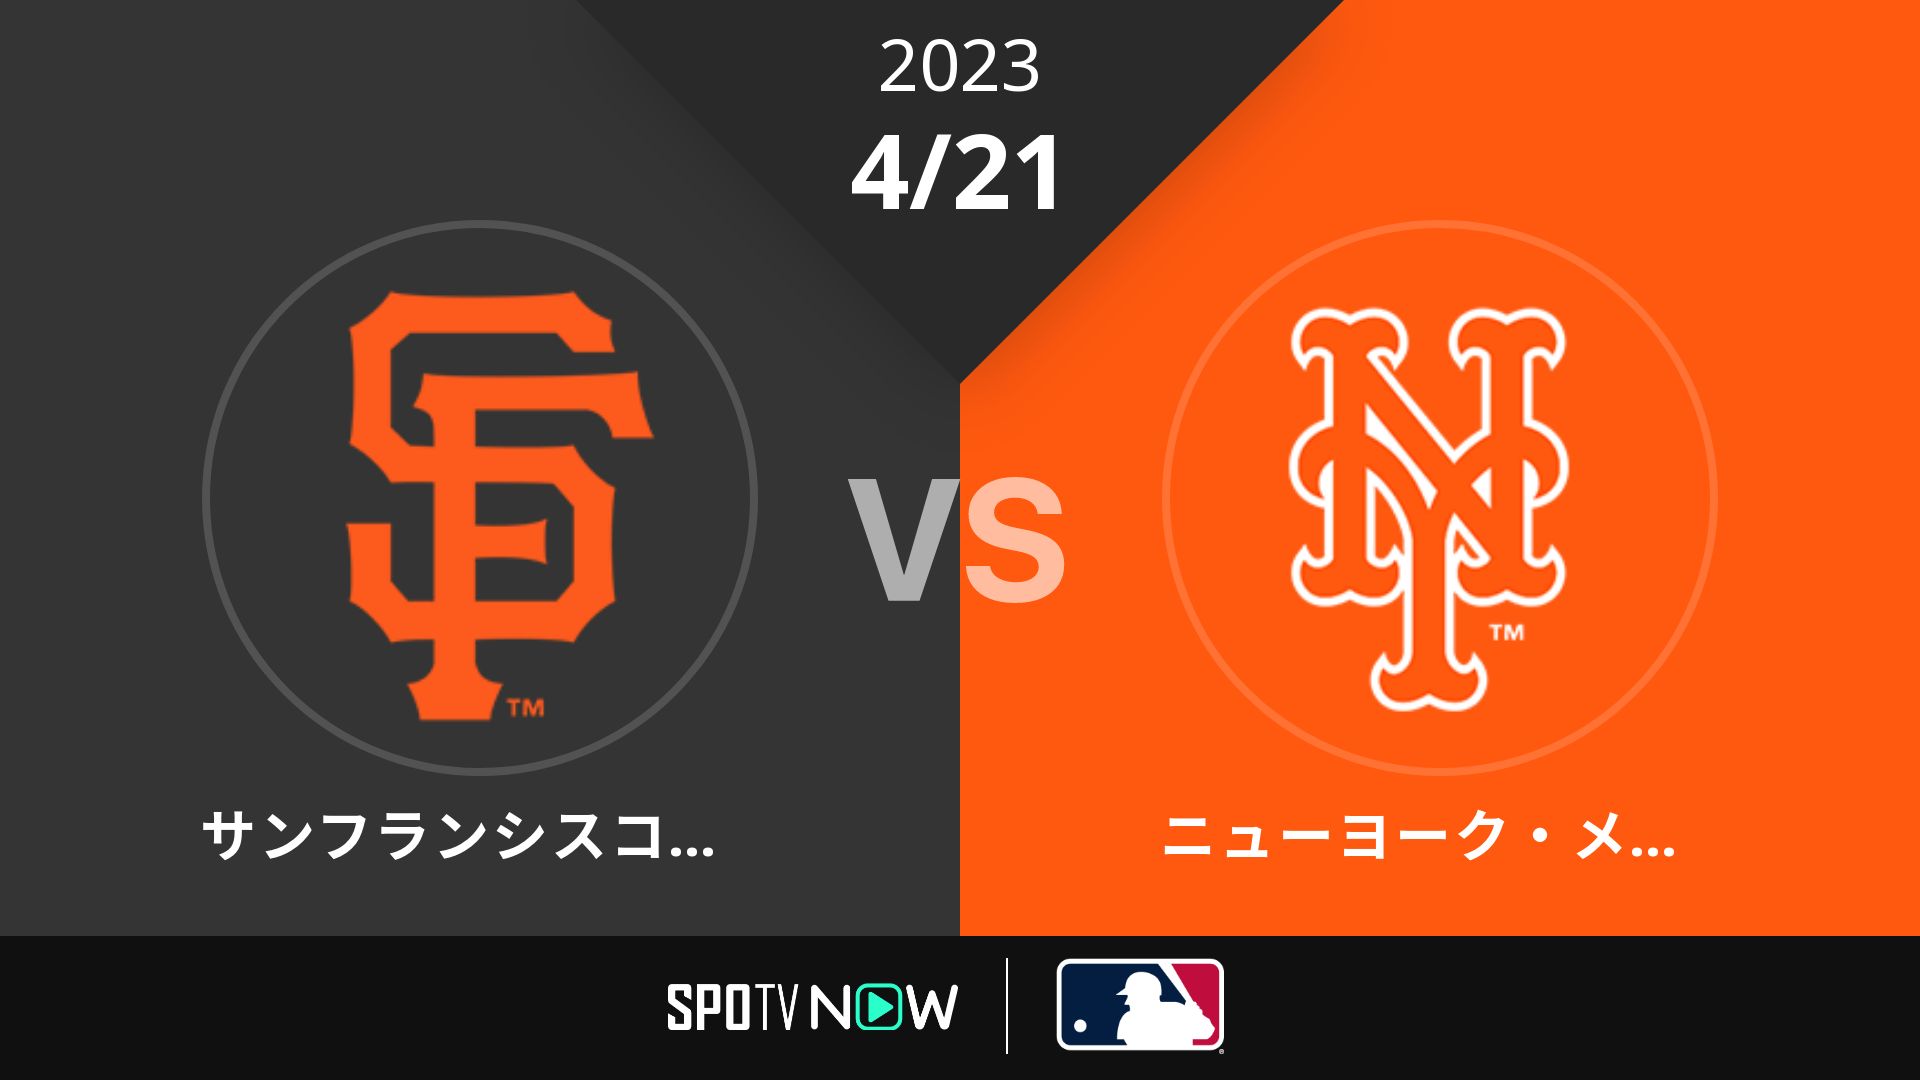 2023/4/21 ジャイアンツ vs メッツ [MLB]